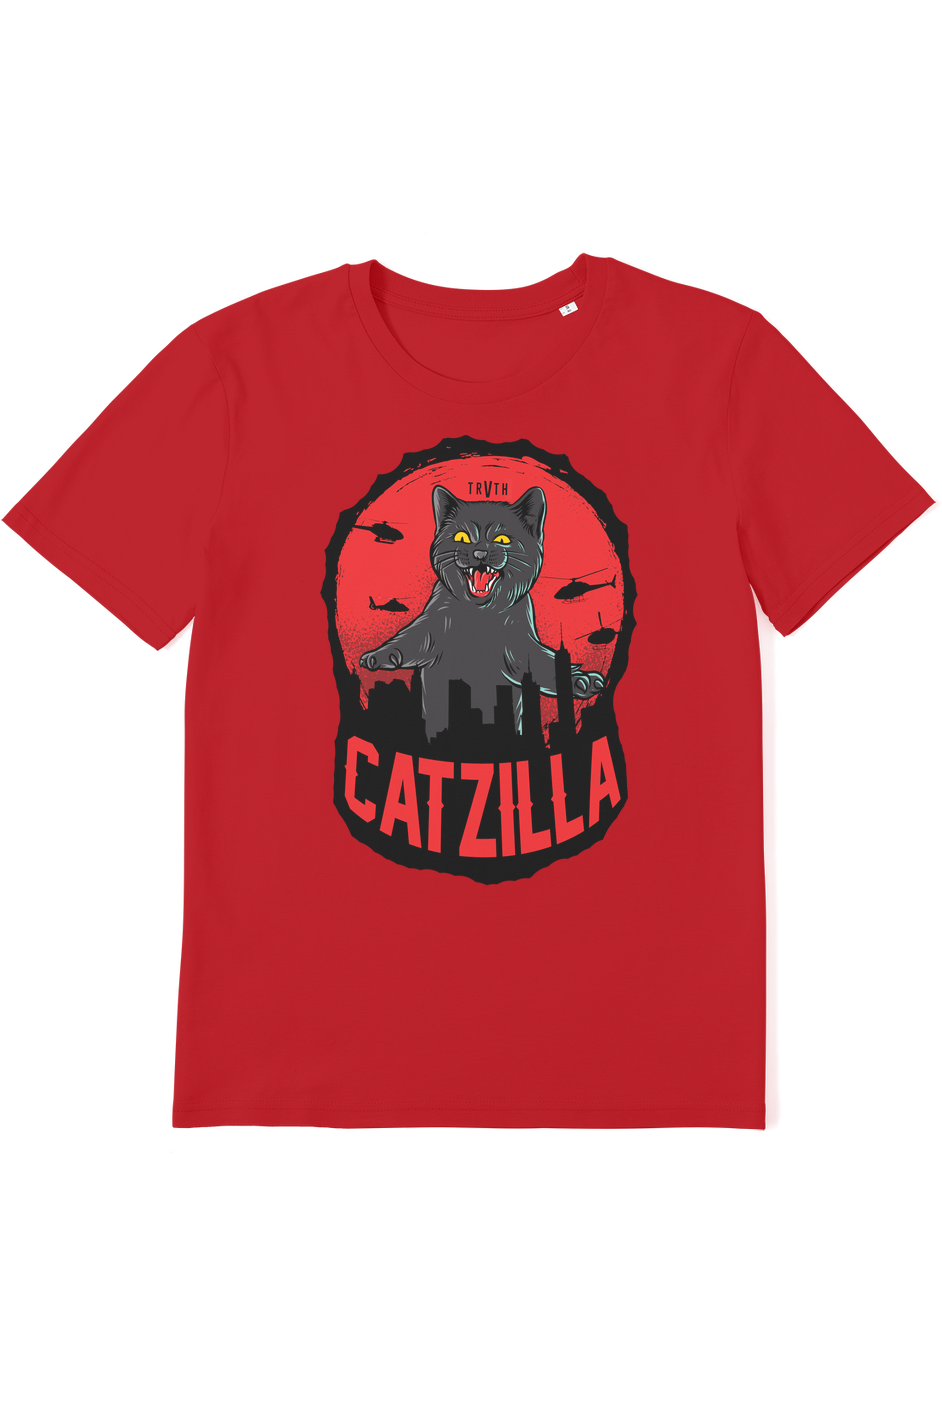 Catzilla Organic T-Shirt vegan, sustainable, organic streetwear, - TRVTH ORGANIC CLOTHING